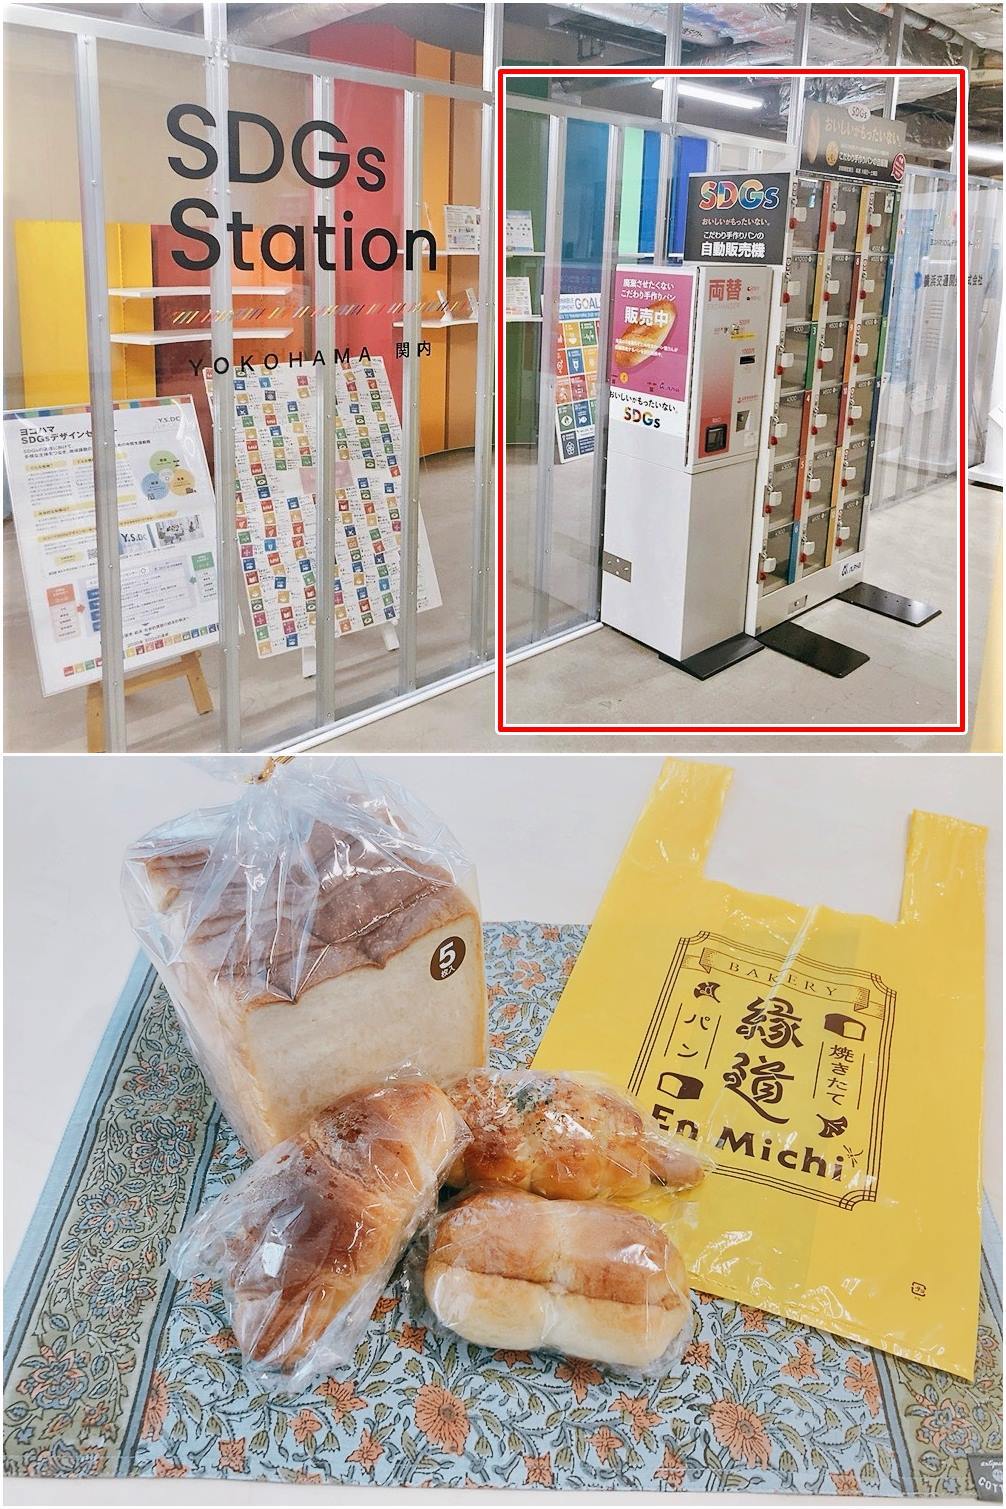 “이건 국내 도입 시급” 일본에서 폭발적인 인기 끌고 있는 자판기의 정체 (+사진)